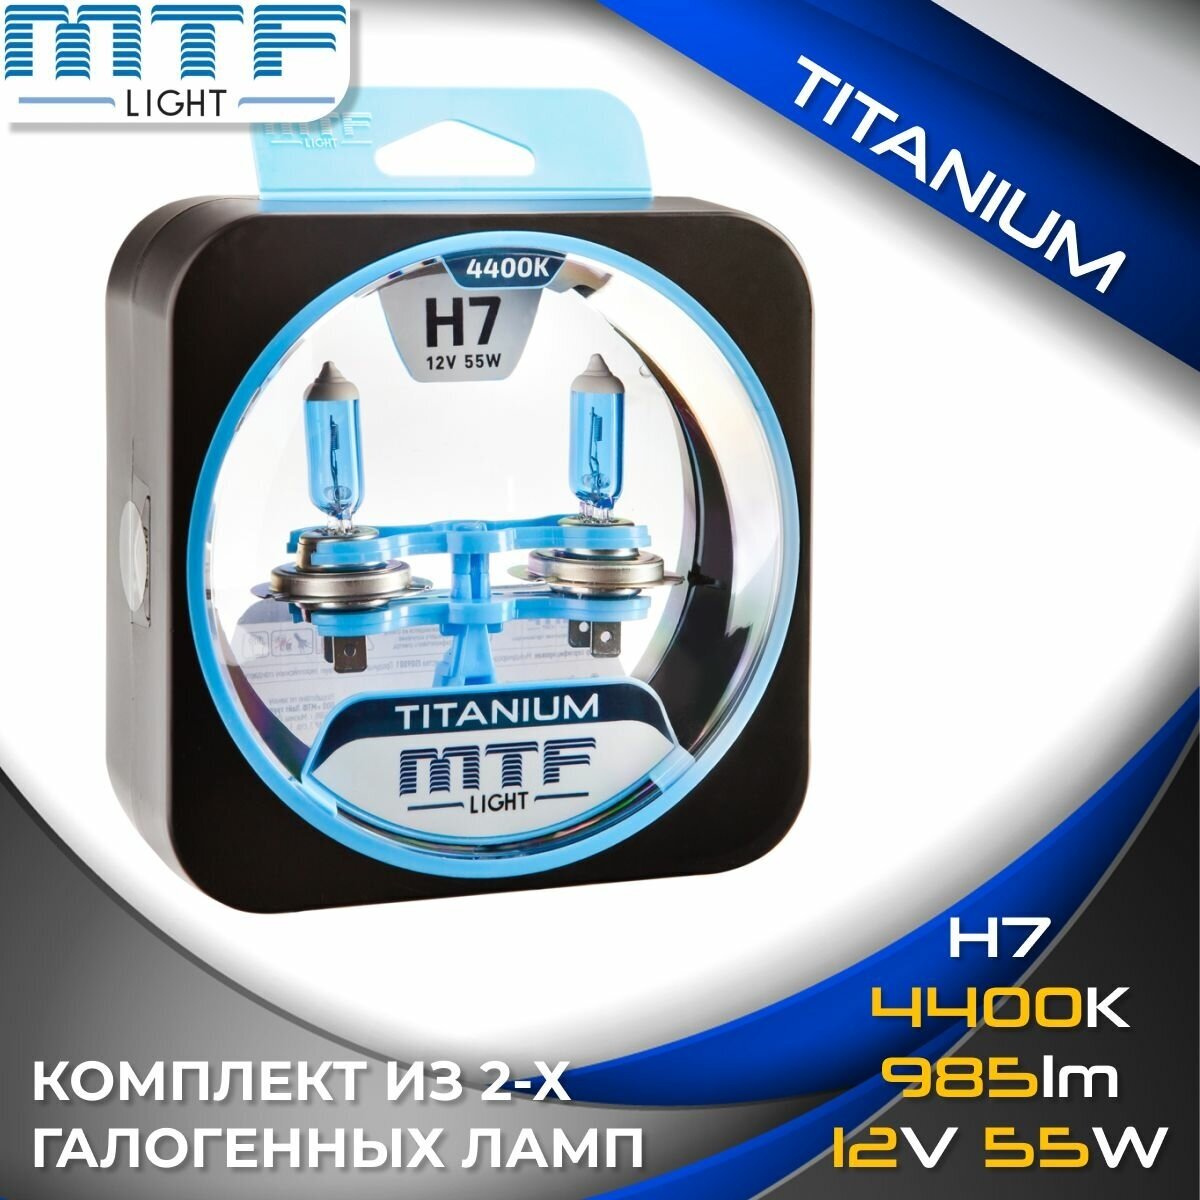 Галогенные автолампы MTF Light серия TITANIUM H7, 12V, 55W (комплект 2 шт.)